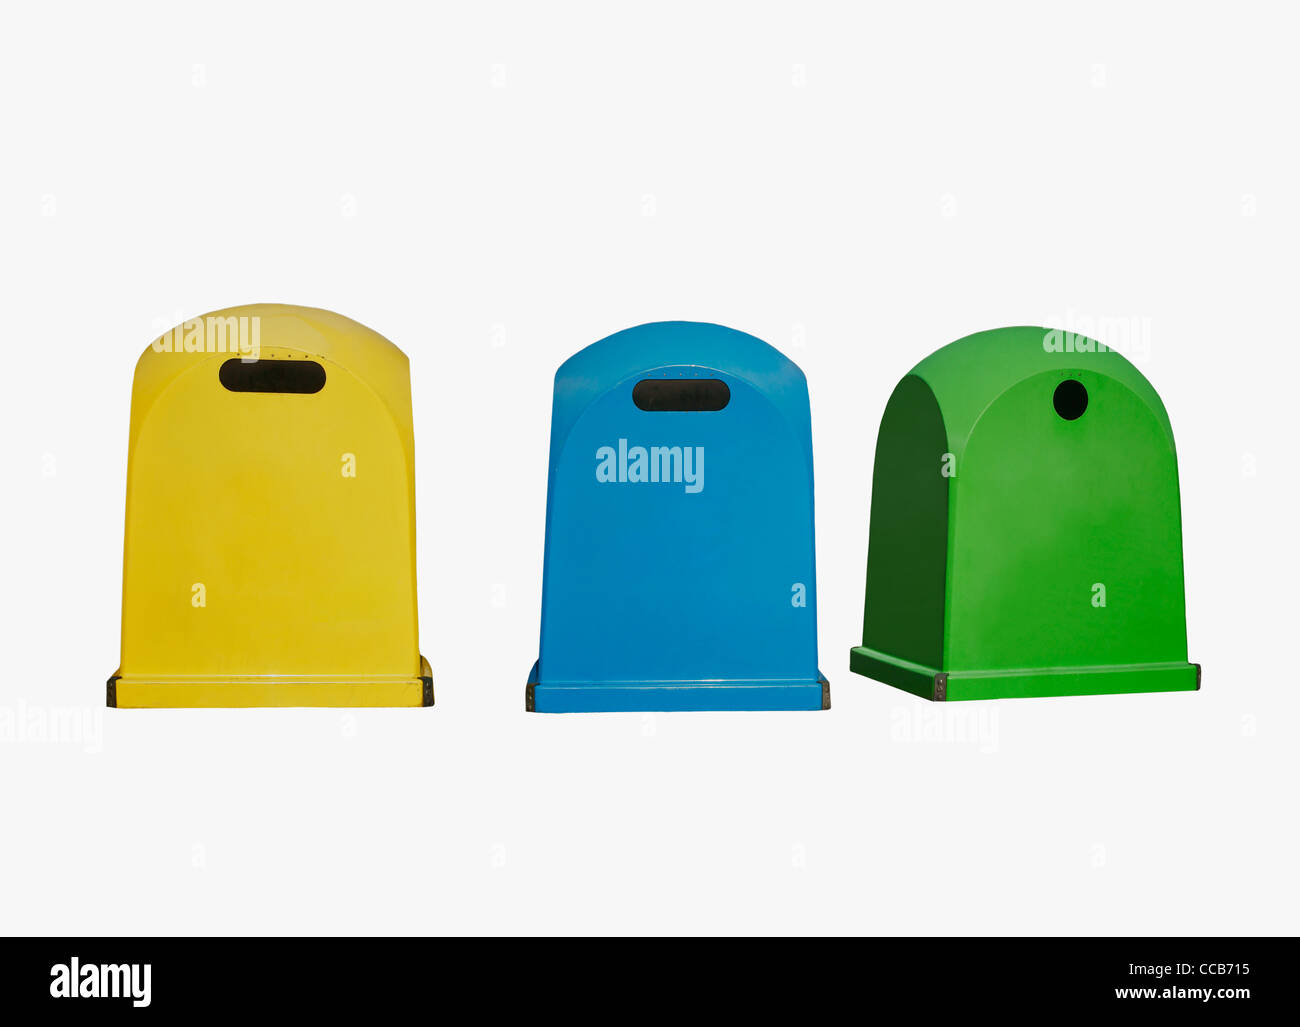 Detailansicht von drei bunten Müllcontainern | photo de détail trois poubelles de couleur Banque D'Images